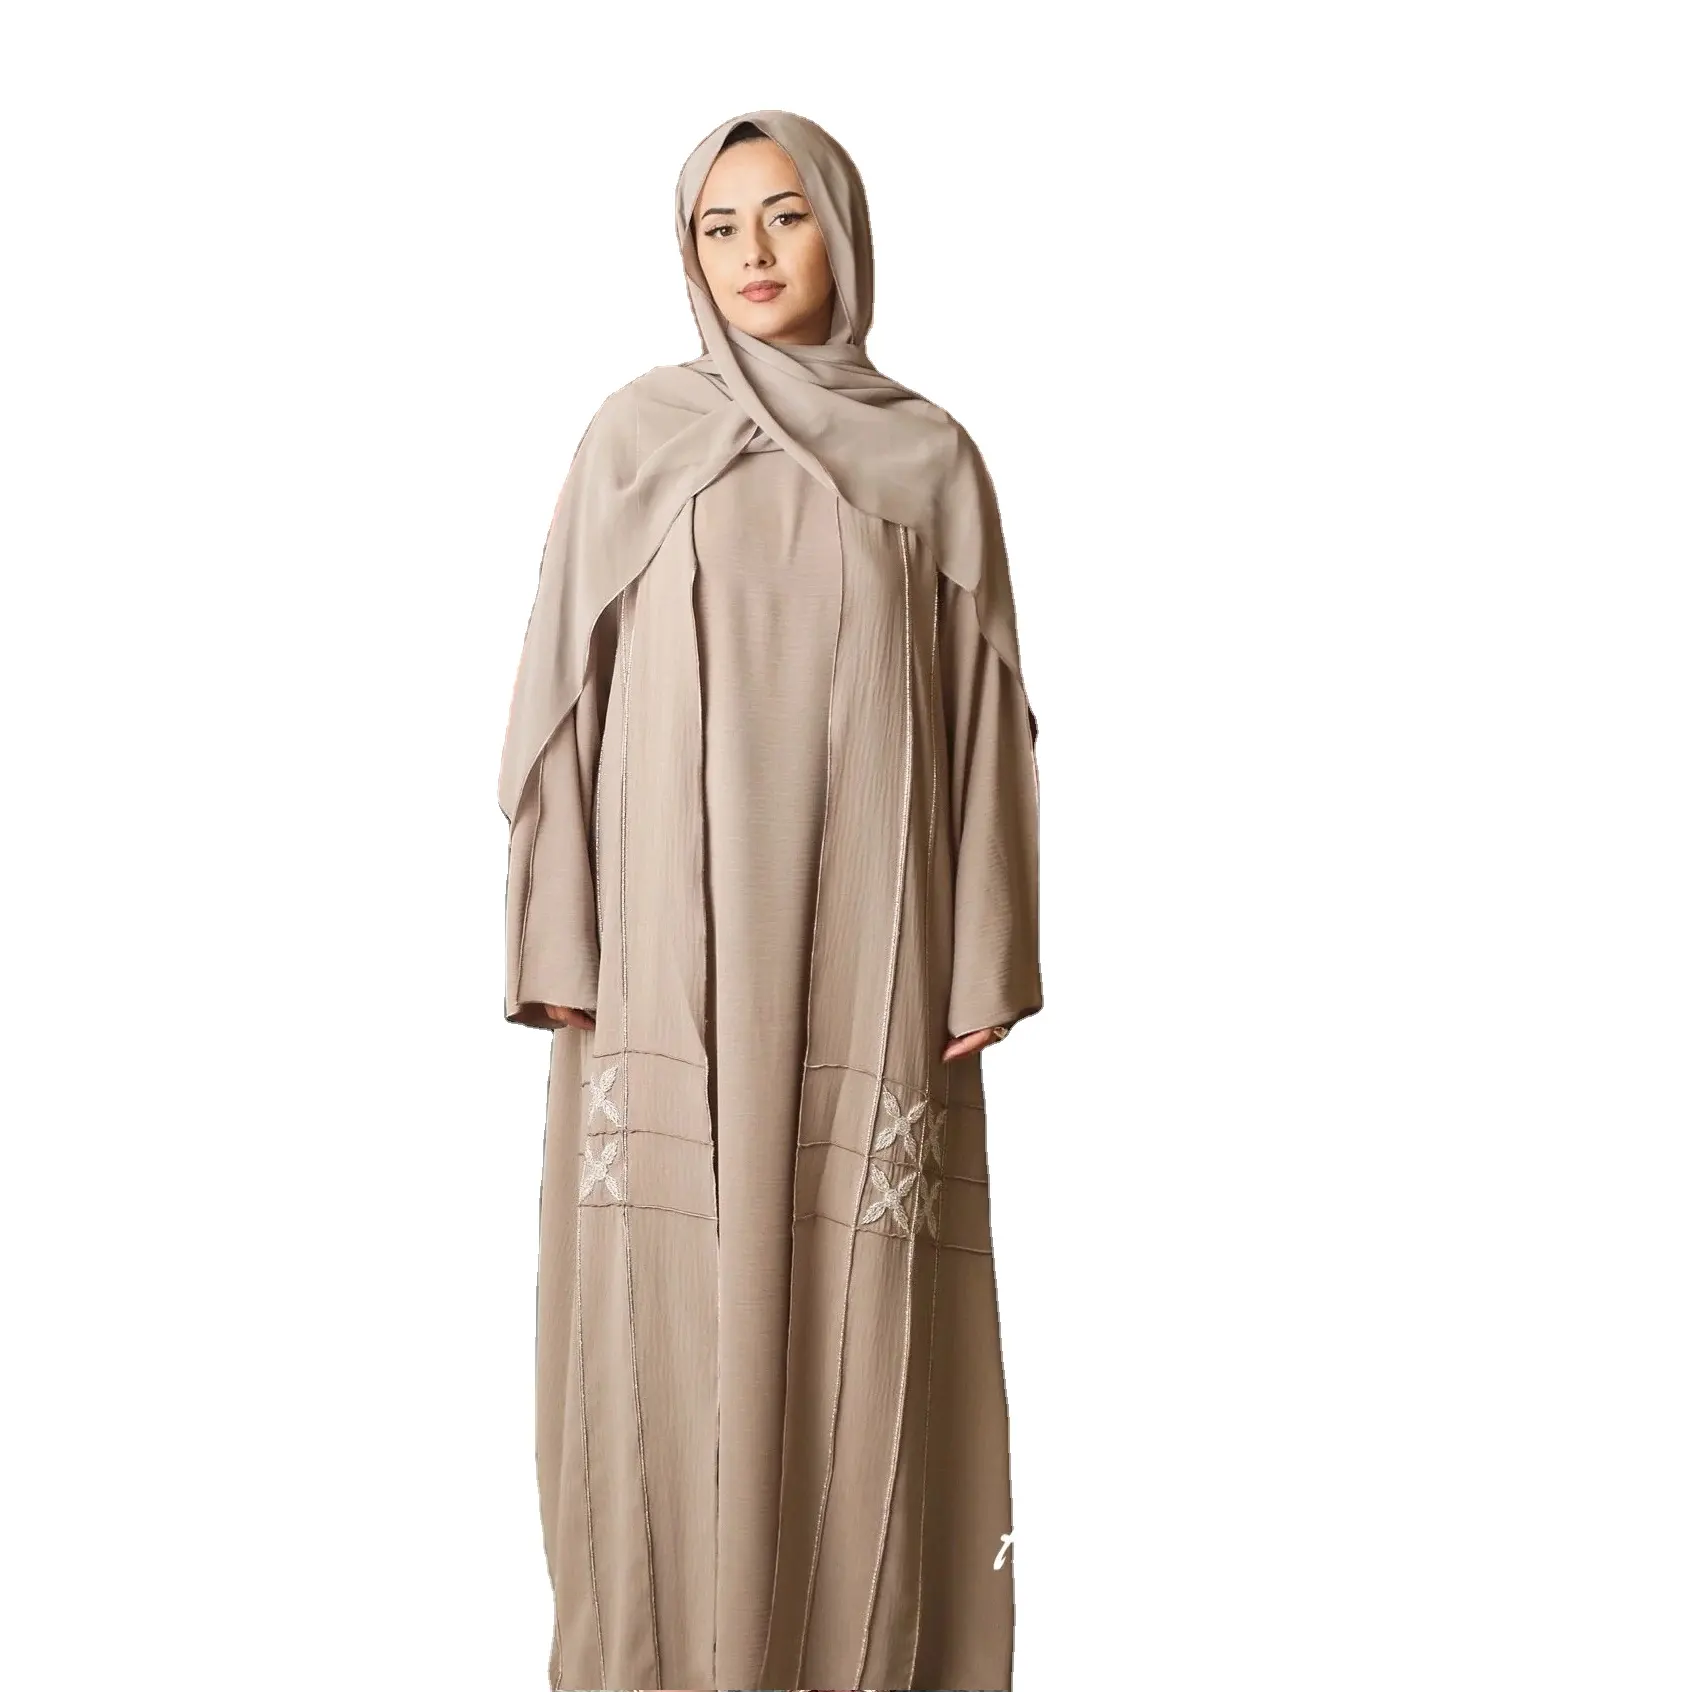 Nude colore Open Design Dubai all'ingrosso Abaya Turkish EID modesto abbigliamento islamico Dubai elegante Open Abaya abito musulmano donna